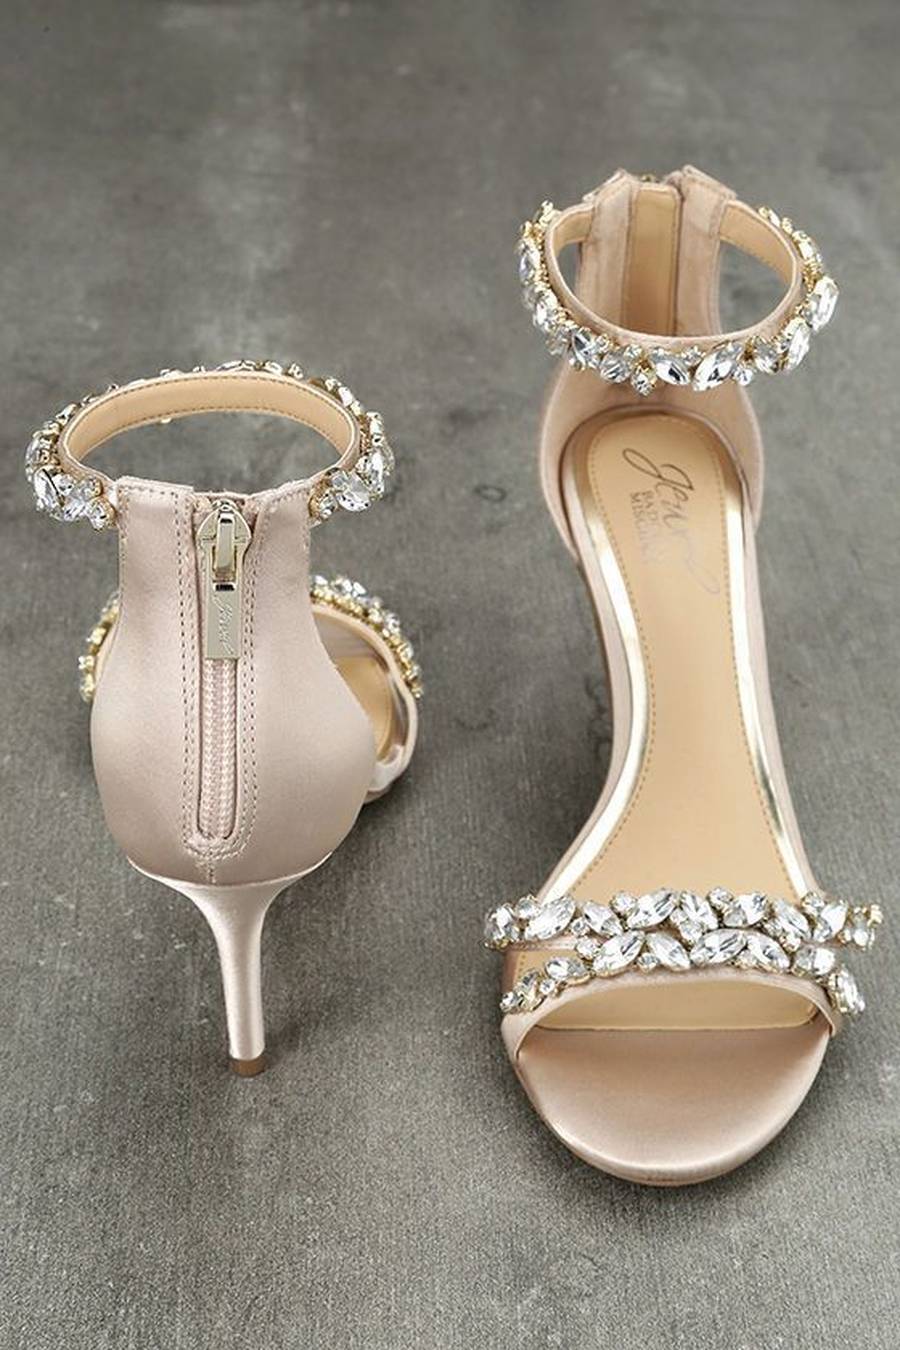  زیباترین کفش عروس 